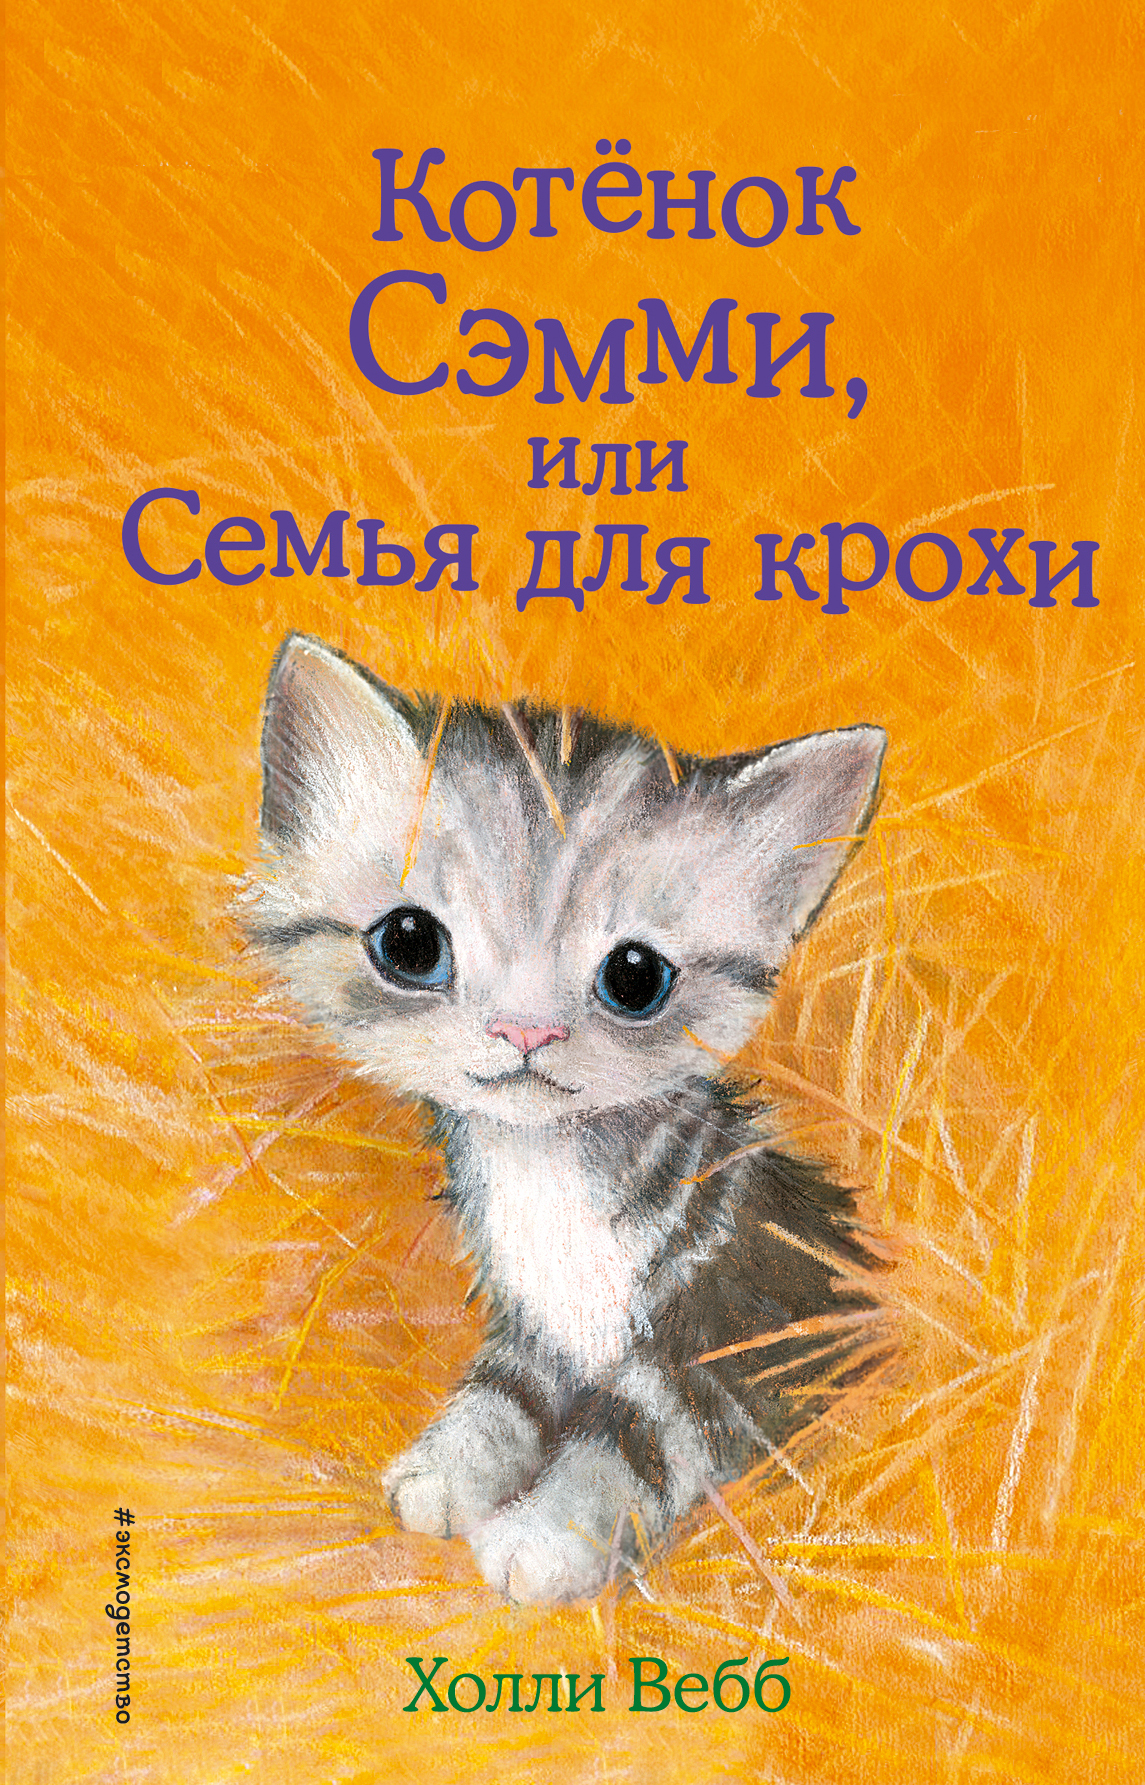 Котенок Сэмми, или Семья для крохи, Холли Вебб – скачать книгу fb2, epub,  pdf на ЛитРес